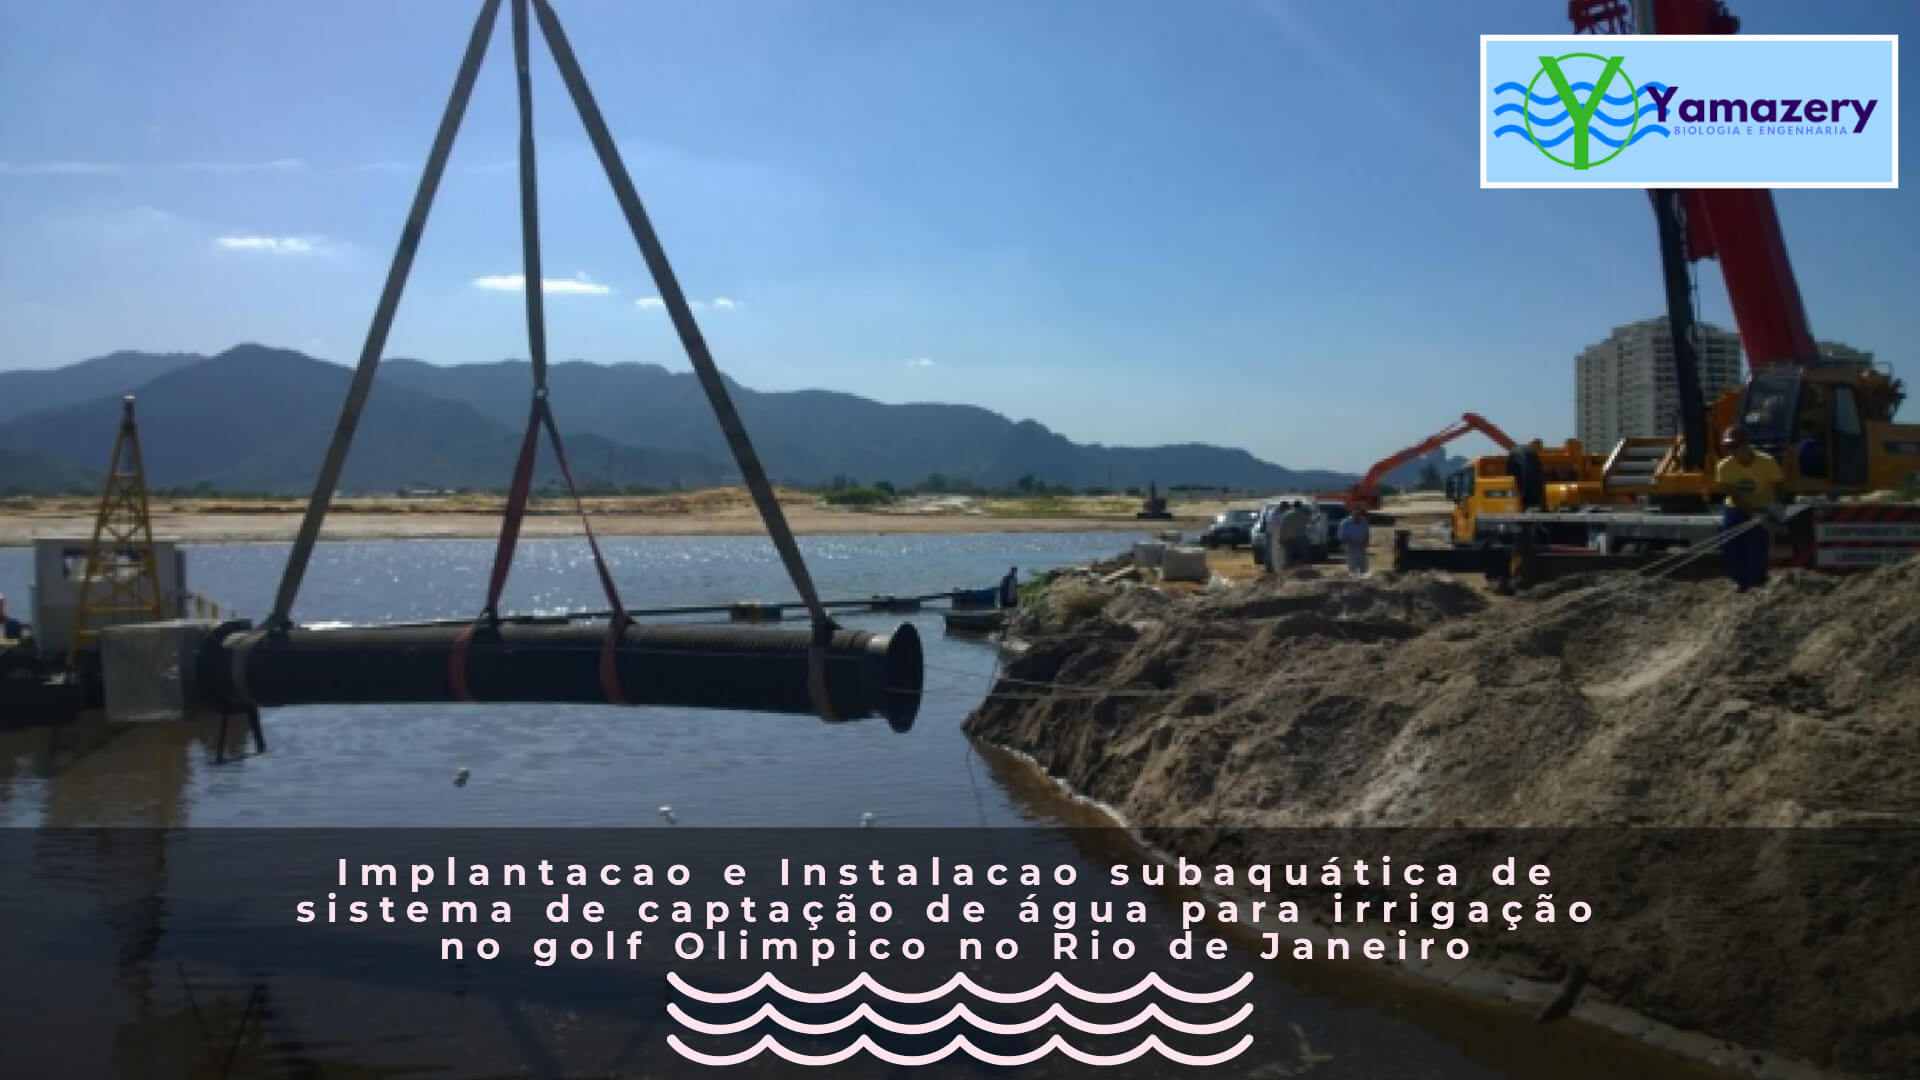 Implantacao e Instalacao subaquática de sistema de captação de água para irrigação no golf Olimpico no Rio de Janeiro